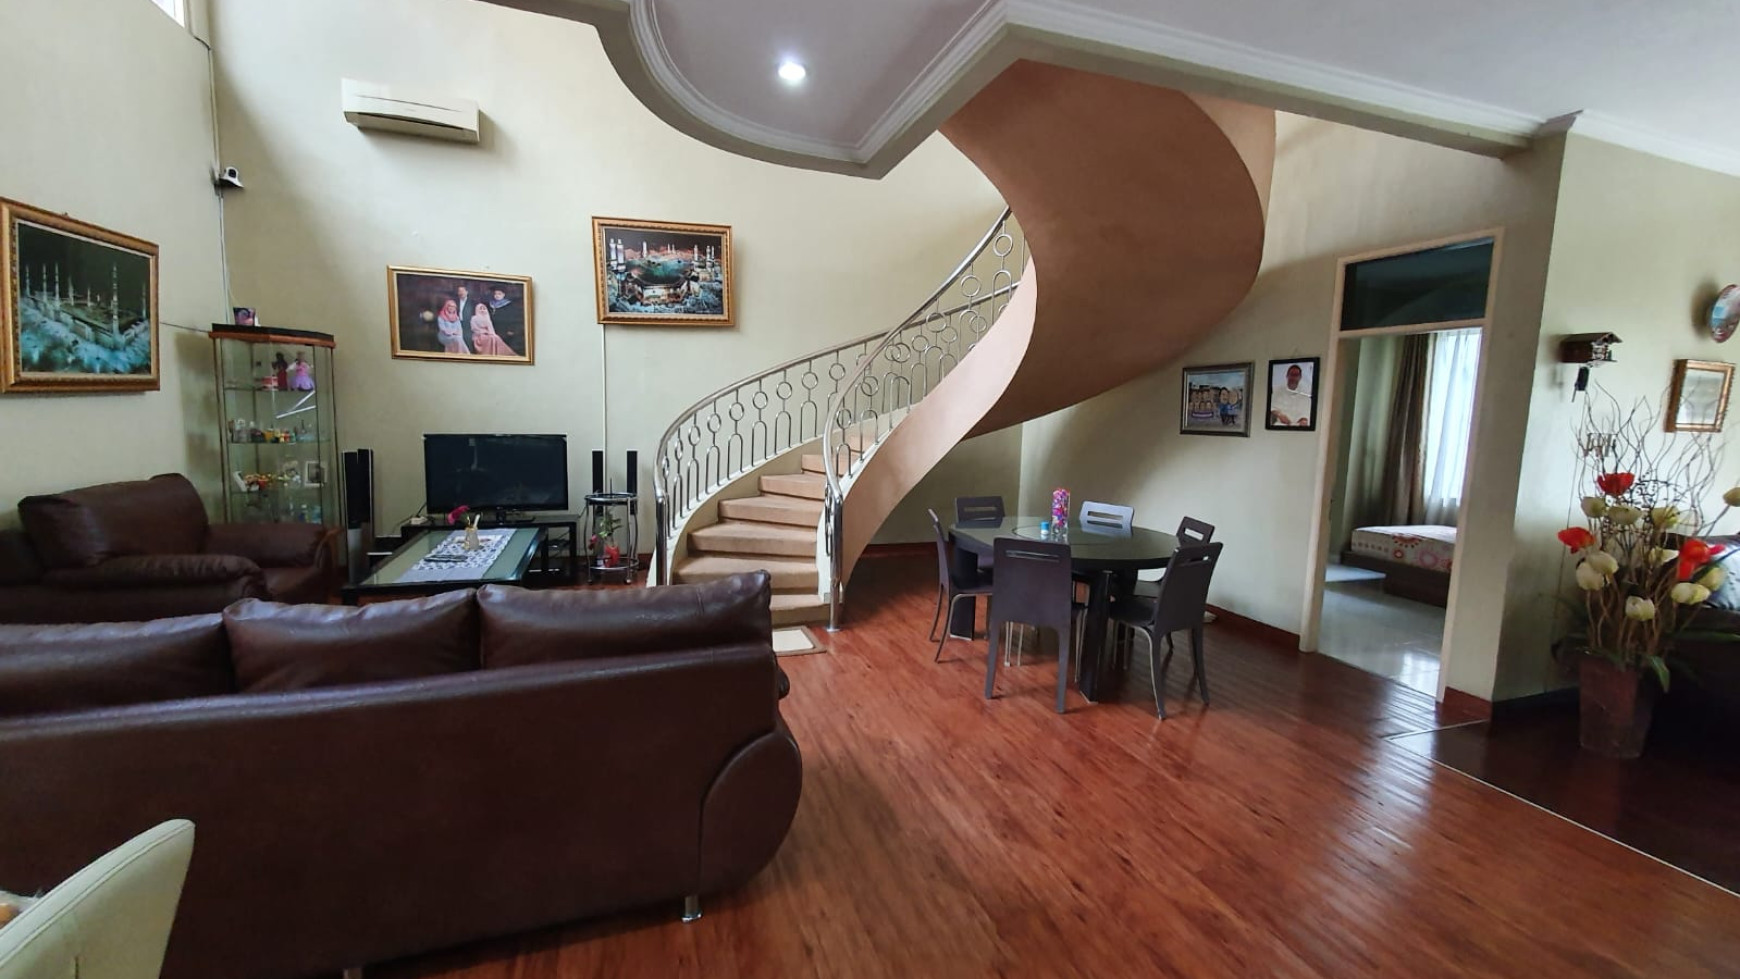 Rumah berlantai 2 di Modernland - Tangerang dengan Harga Jual Menarik